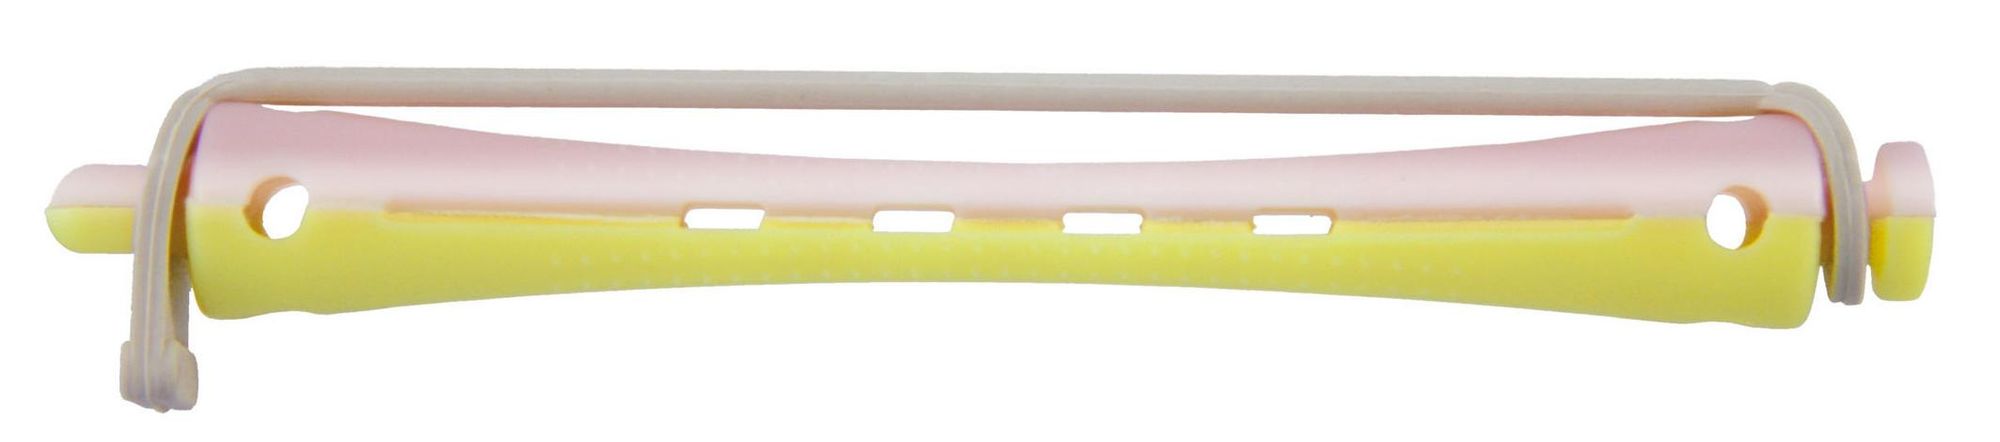 Comair Permanentwikkels lang geel/roze 8mm Geel/roze 12 stuks